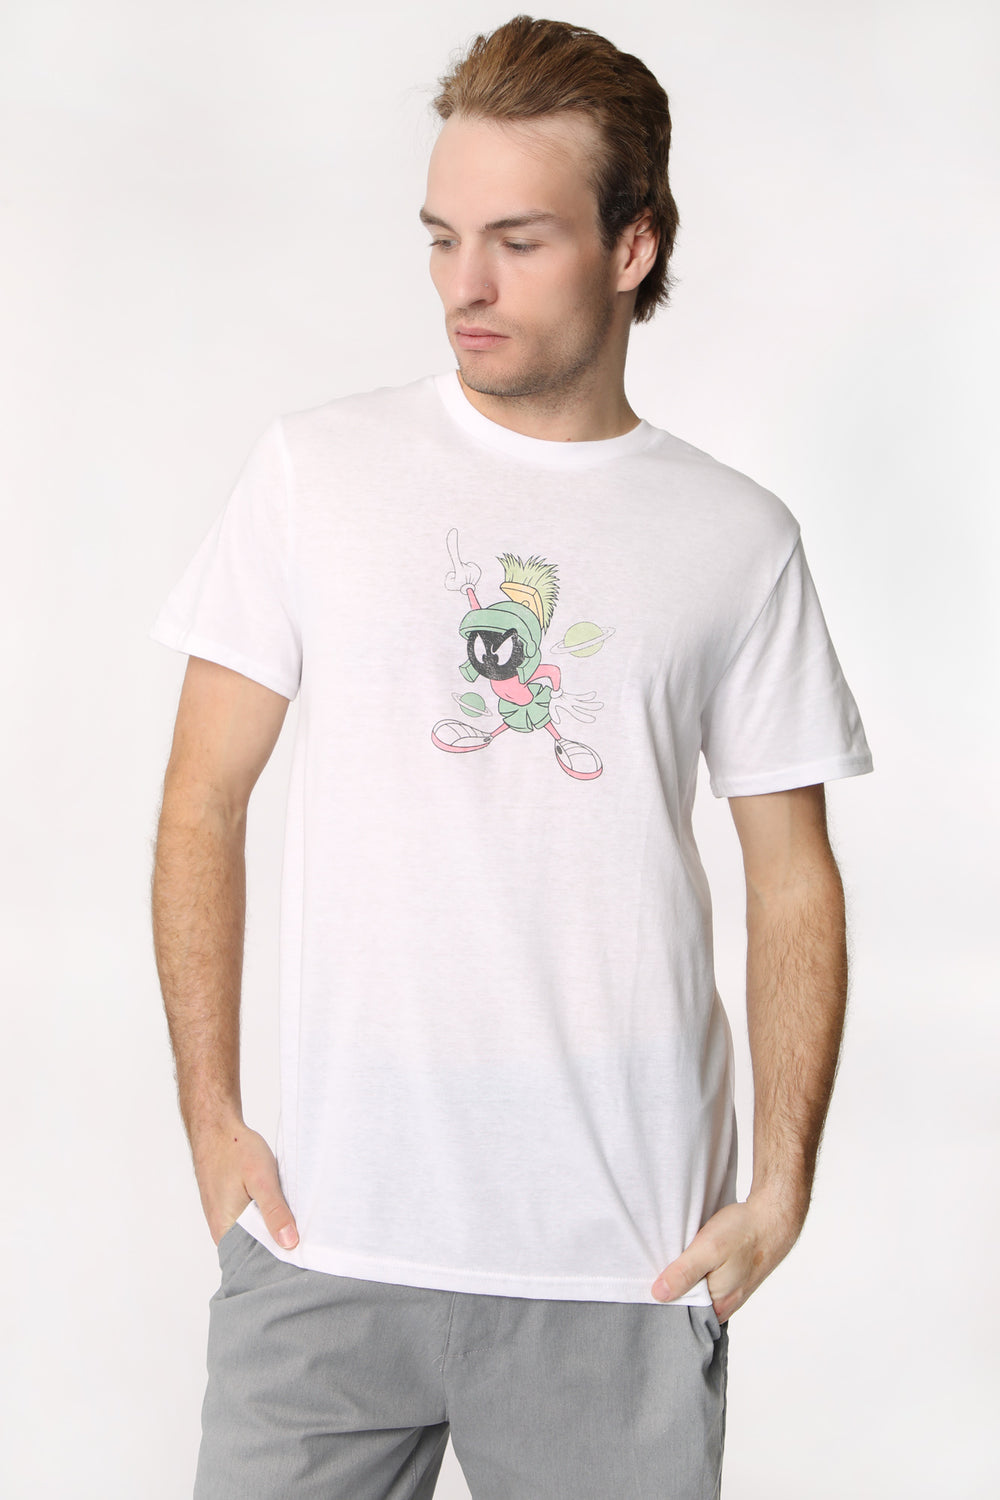 T-Shirt Imprimé Marvin The Martian Homme T-Shirt Imprimé Marvin The Martian Homme